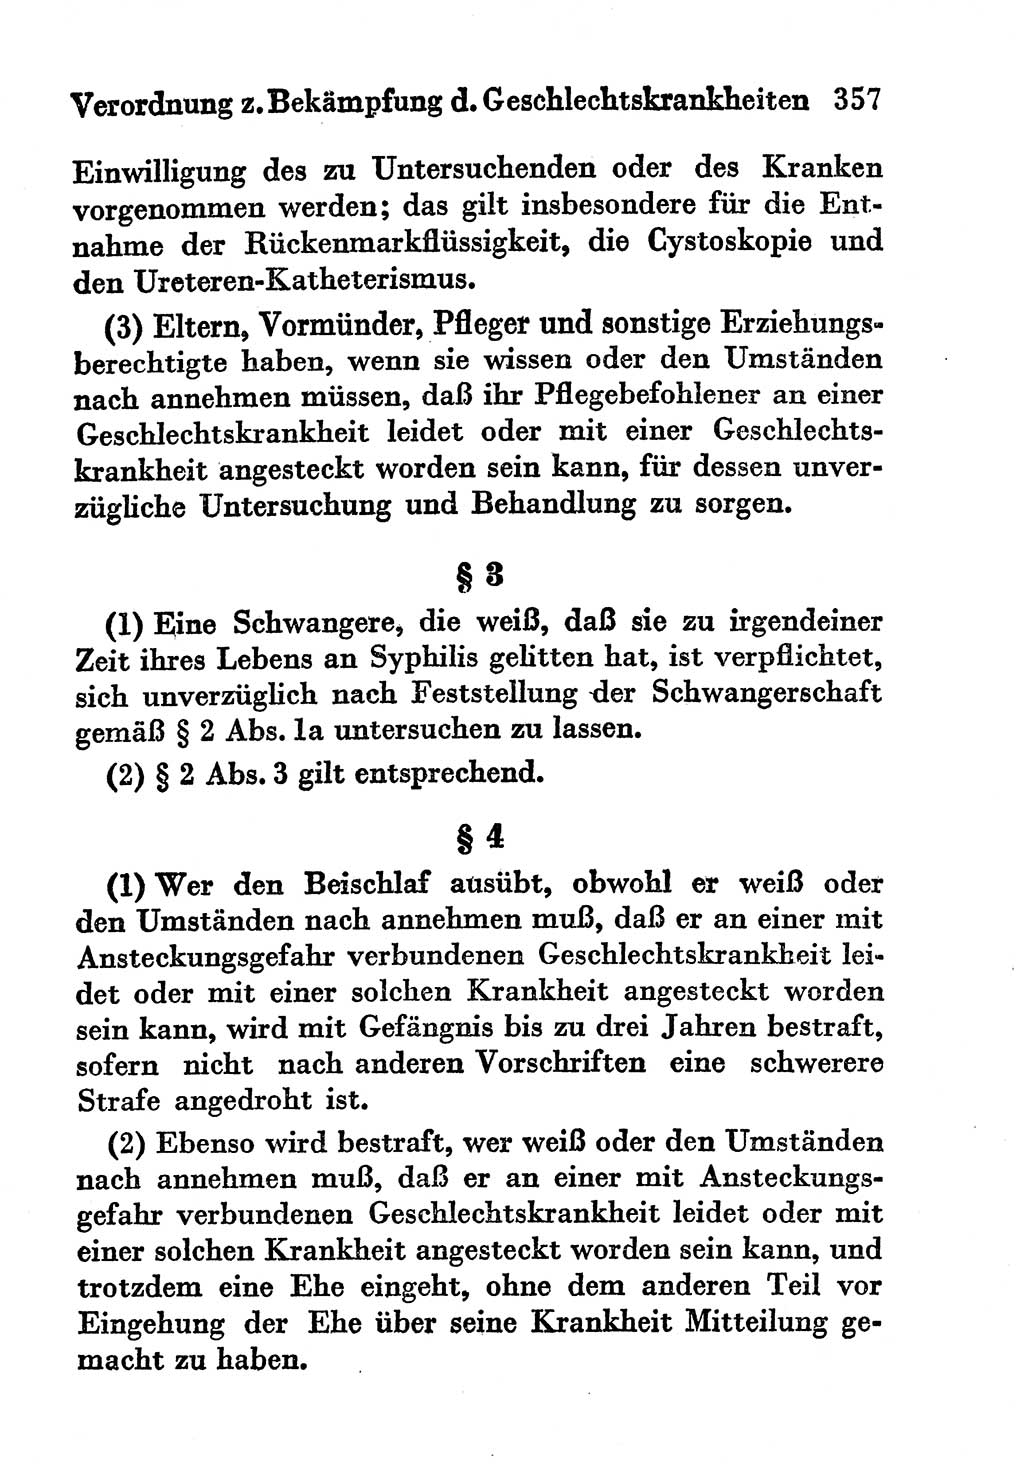 Strafgesetzbuch (StGB) und andere Strafgesetze [Deutsche Demokratische Republik (DDR)] 1956, Seite 357 (StGB Strafges. DDR 1956, S. 357)